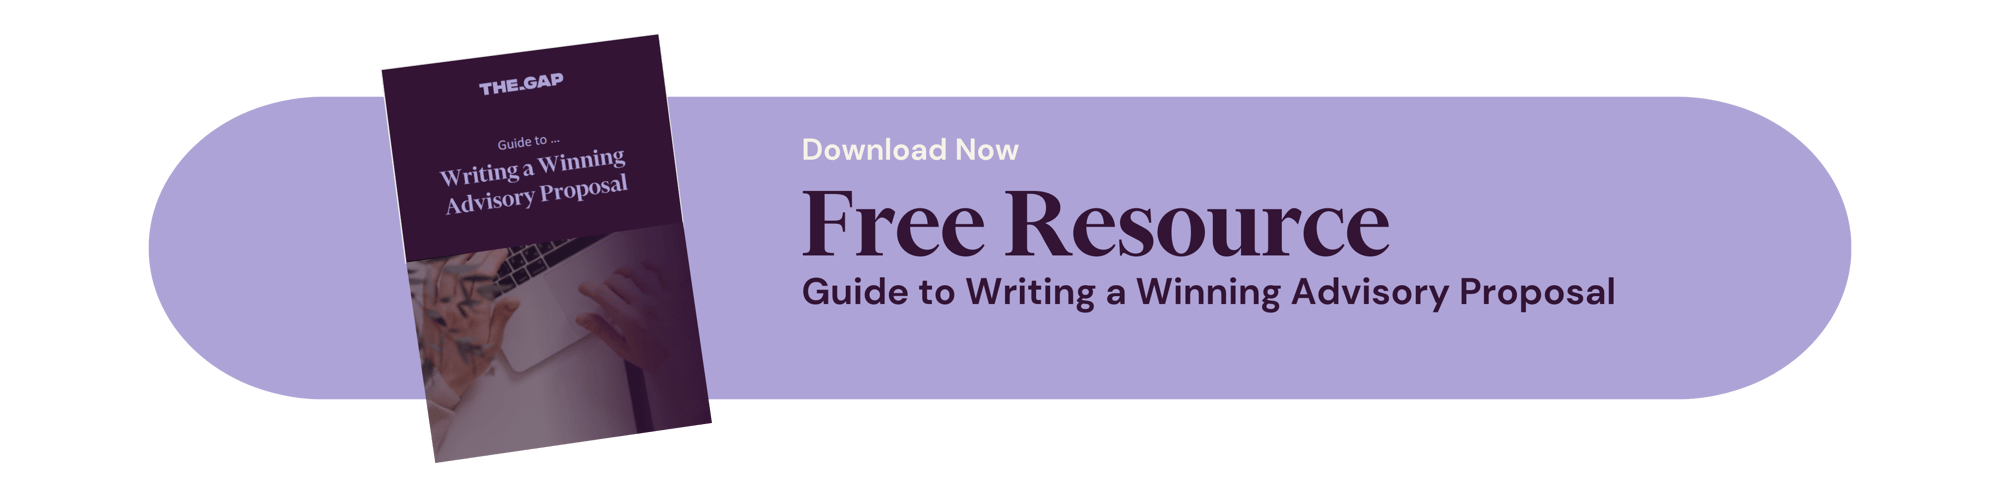 Guide to Writing a Winning Advisory Proposal - long